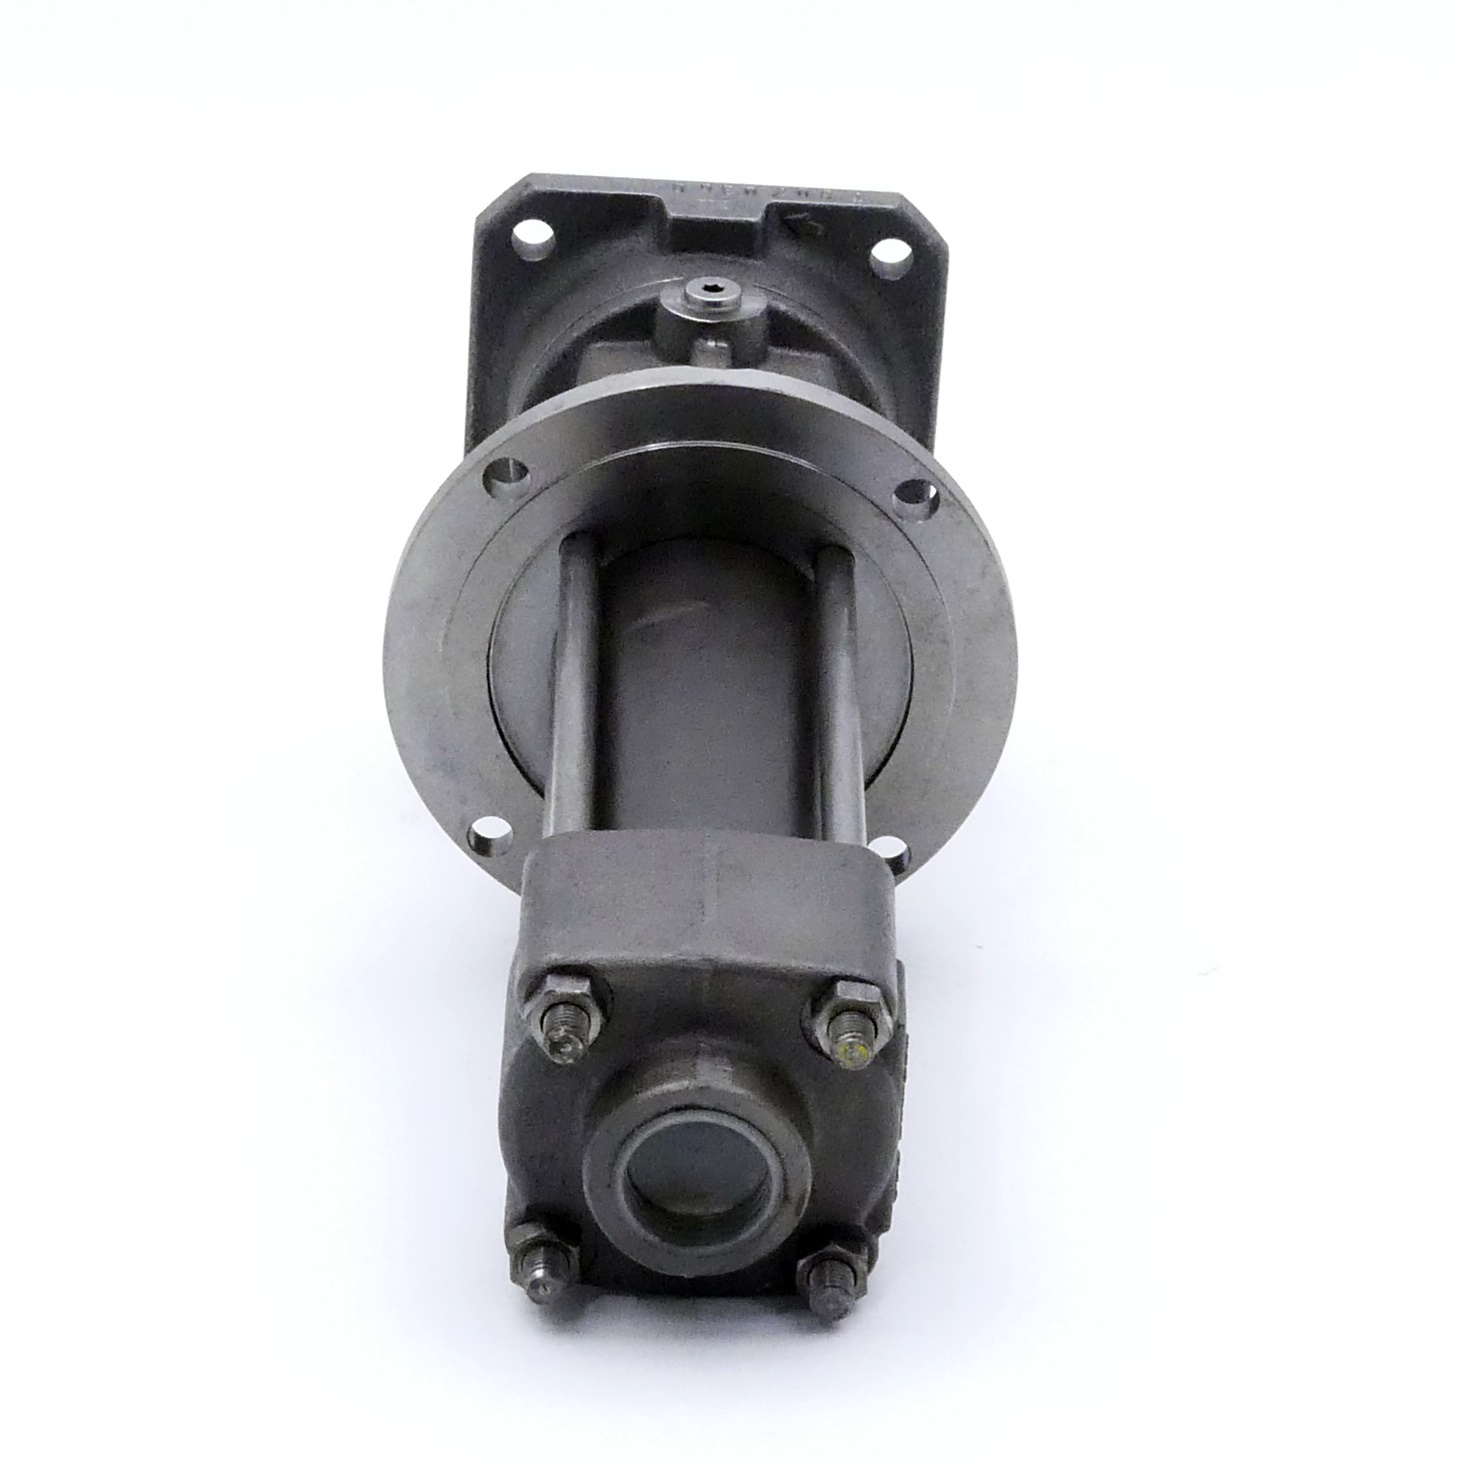 Screw pump EMTEC-A40 R46DQ 